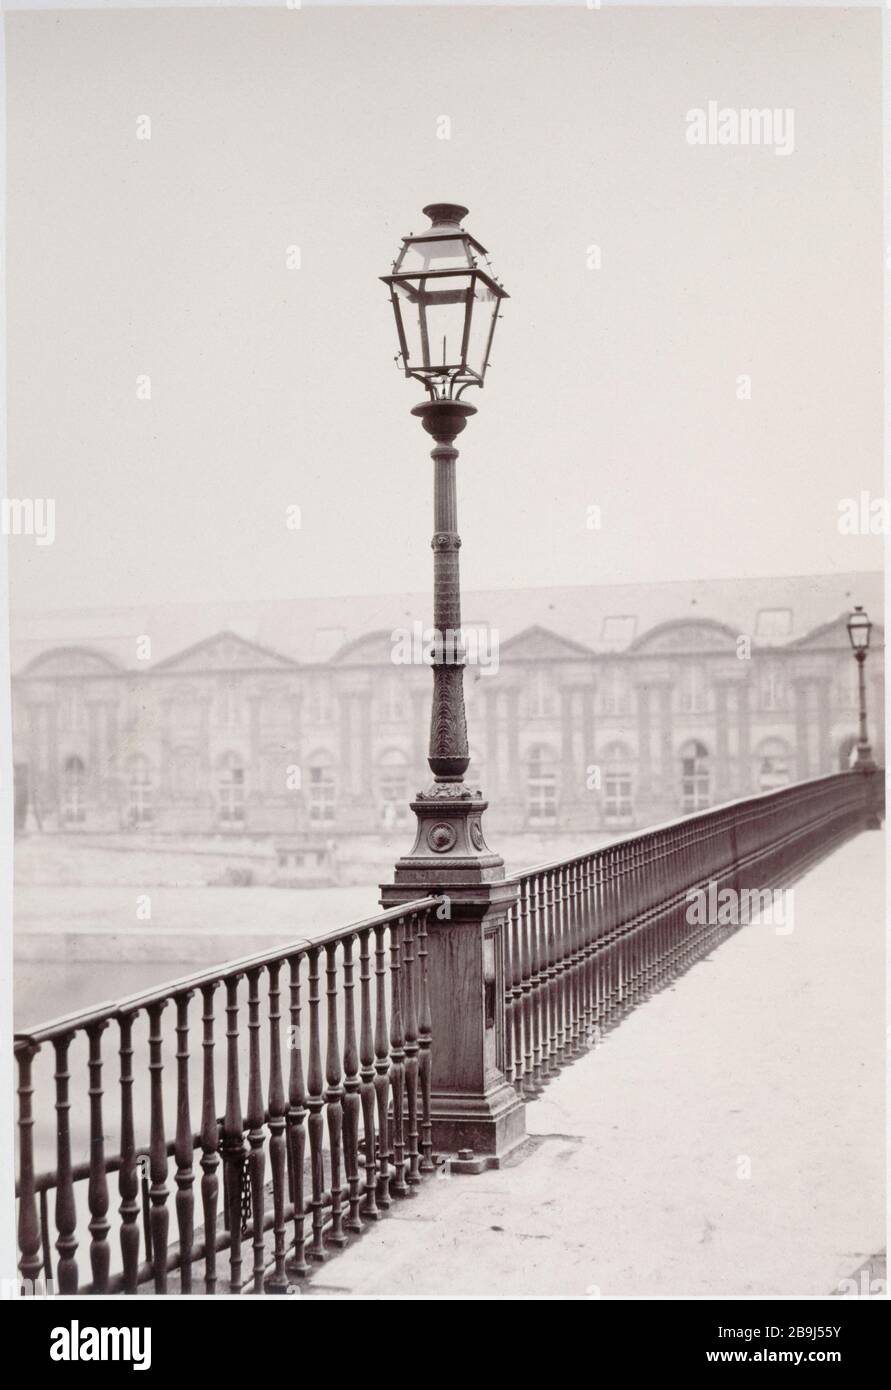 MOBILIARIO DE ÁLBUM 'Album mobilier urbain : Pont du Carrousel, réverbère. París (Ier arr.), vers. 1865. Fotografía de Charles Marville (1813-1879). París, musée Carnavalet. Foto de stock